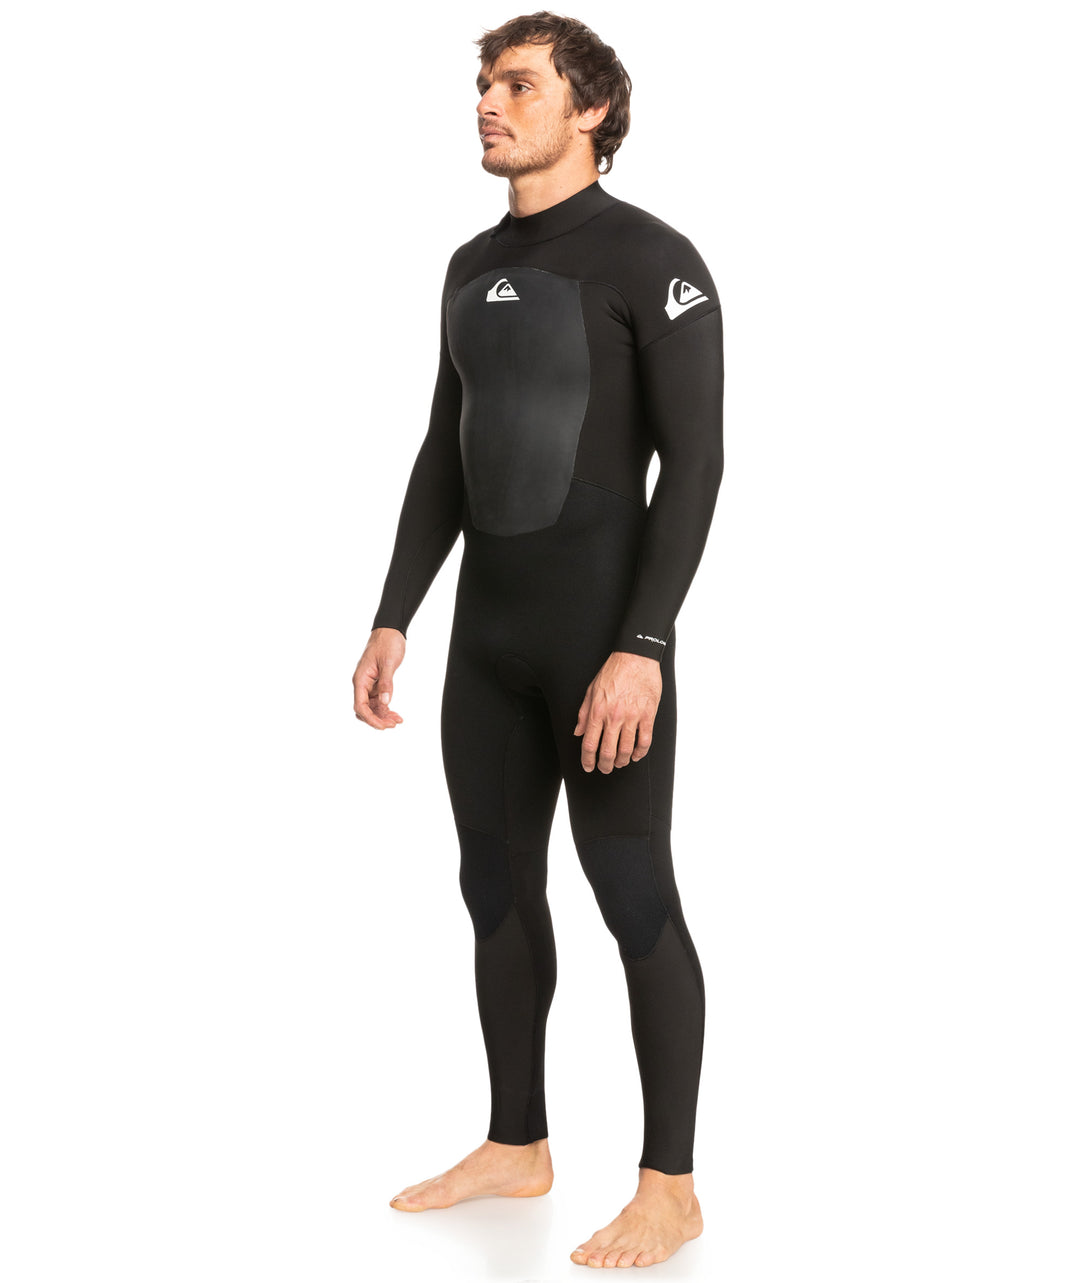 Prologue 3/2 Sealed Steamer Wetsuit - Black